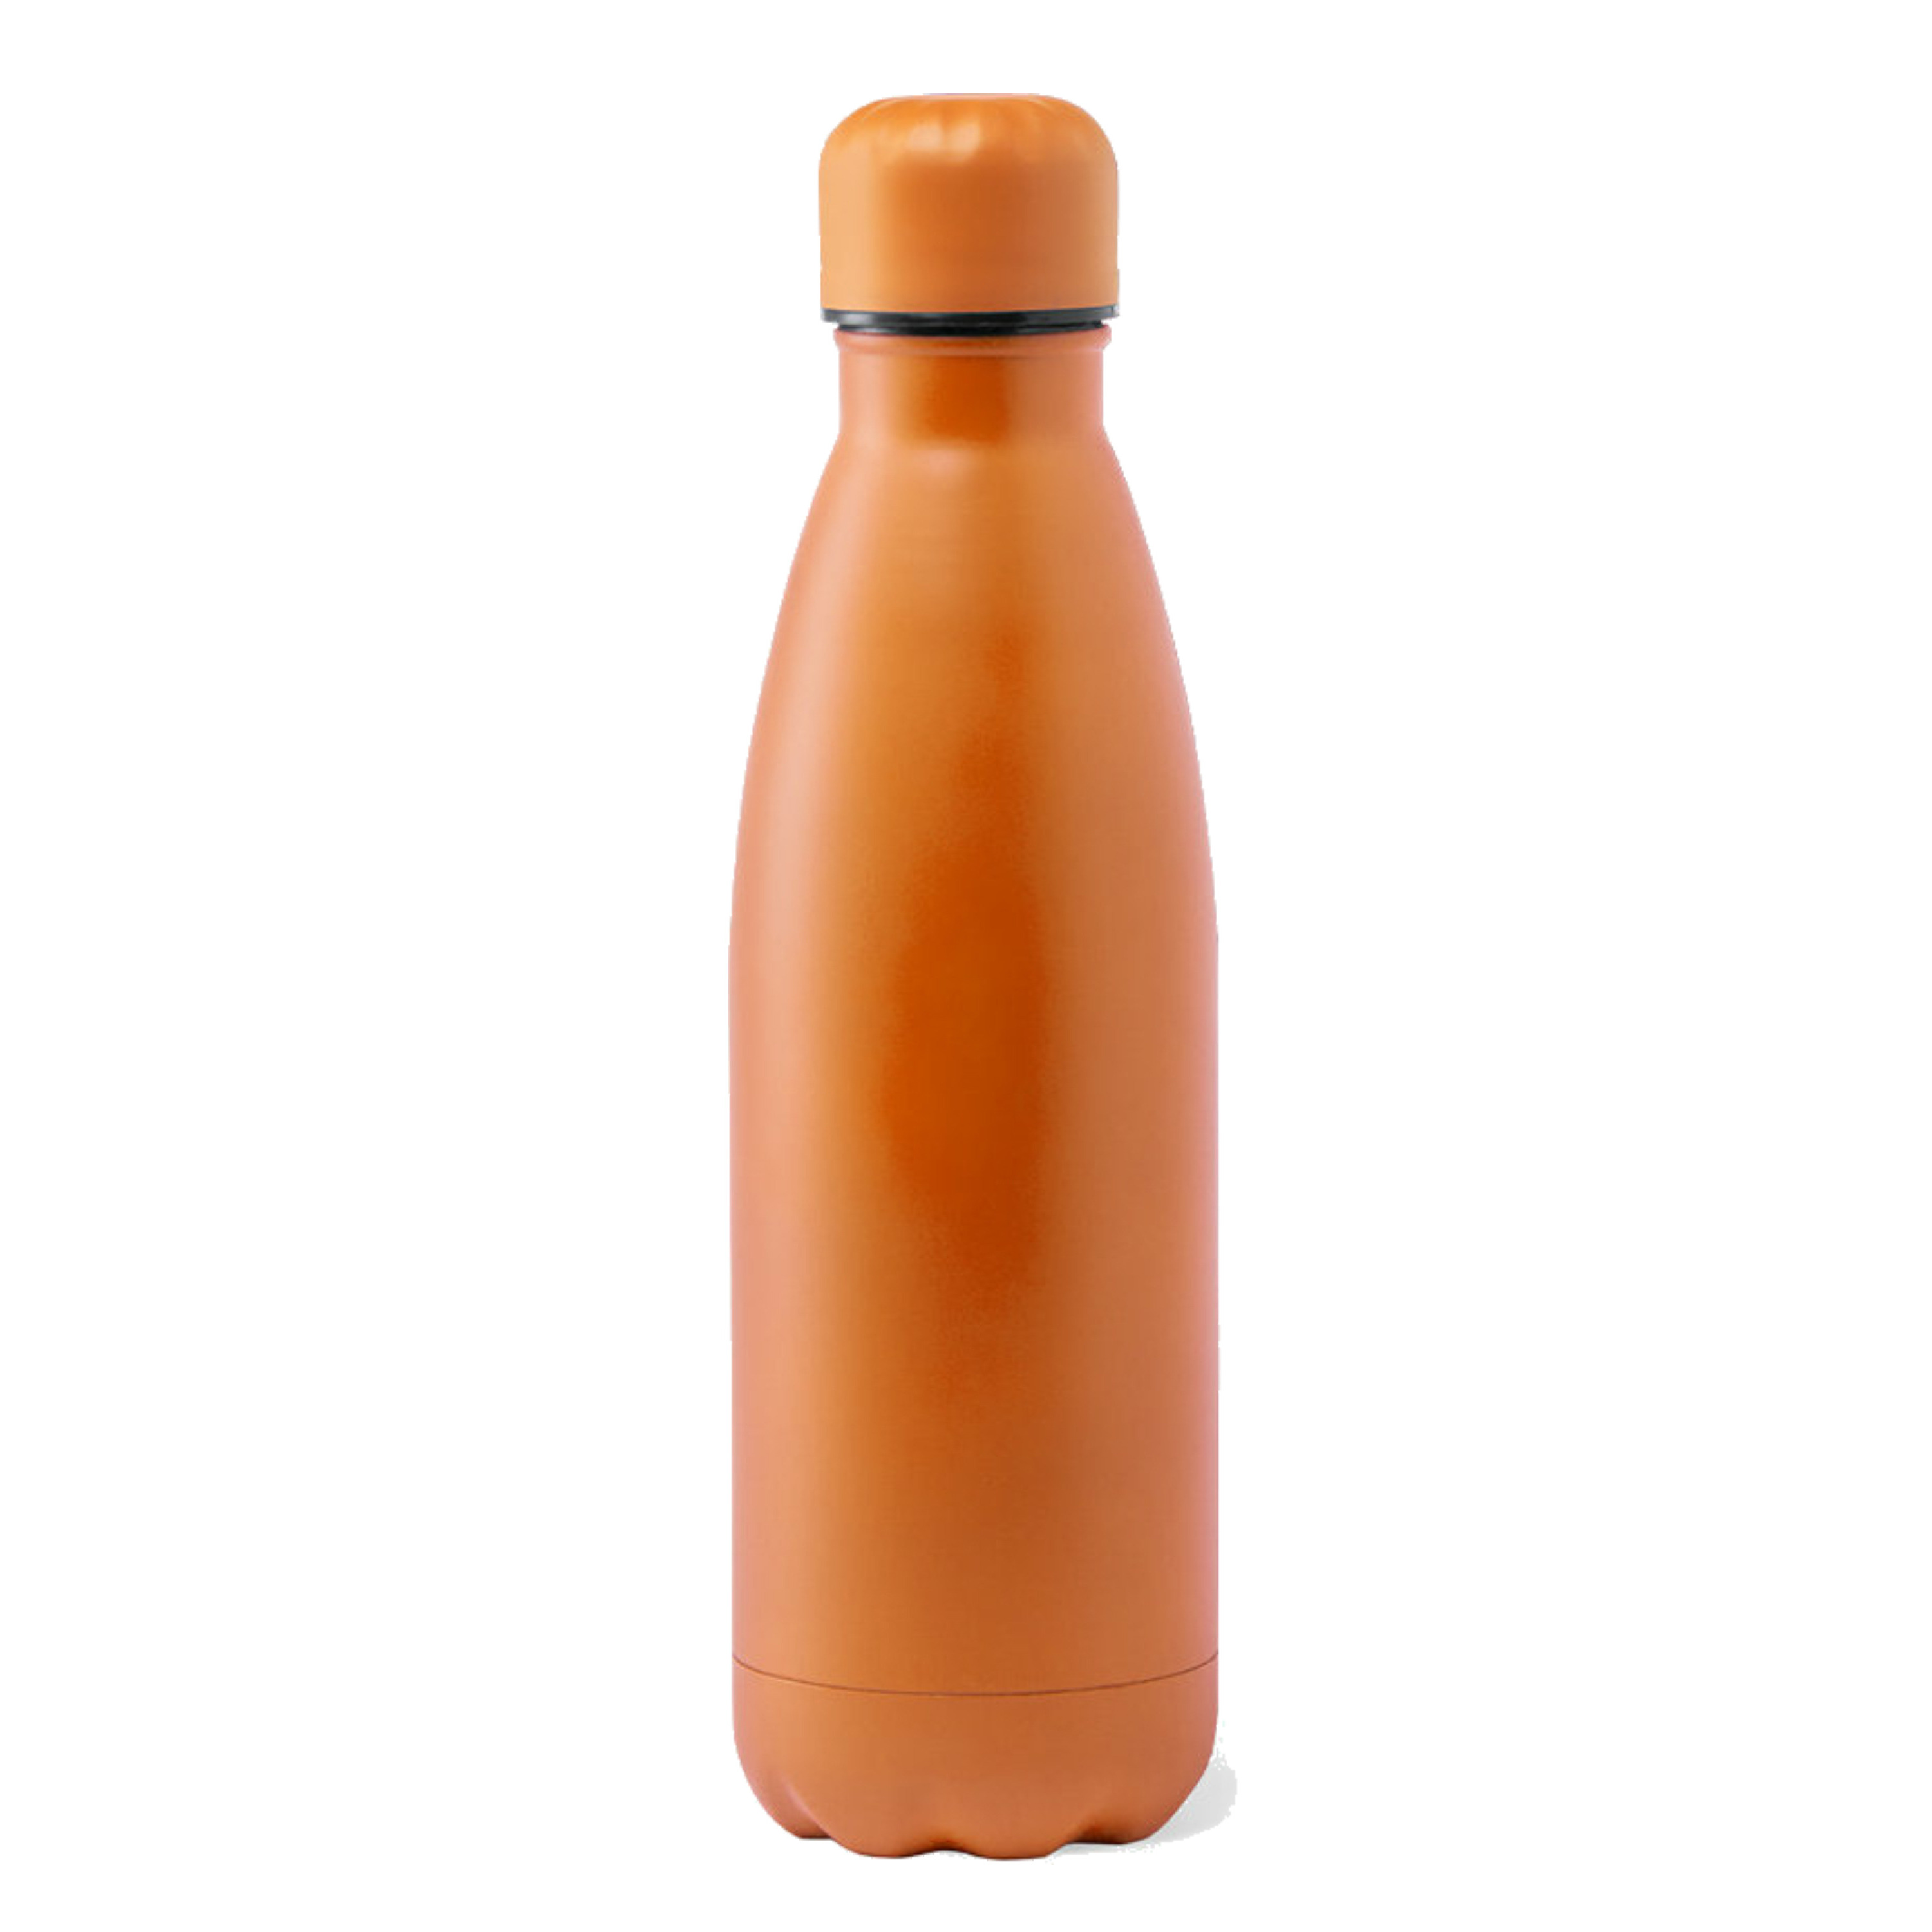 RVS waterfles-drinkfles oranje kleur met schroefdop 790 ml